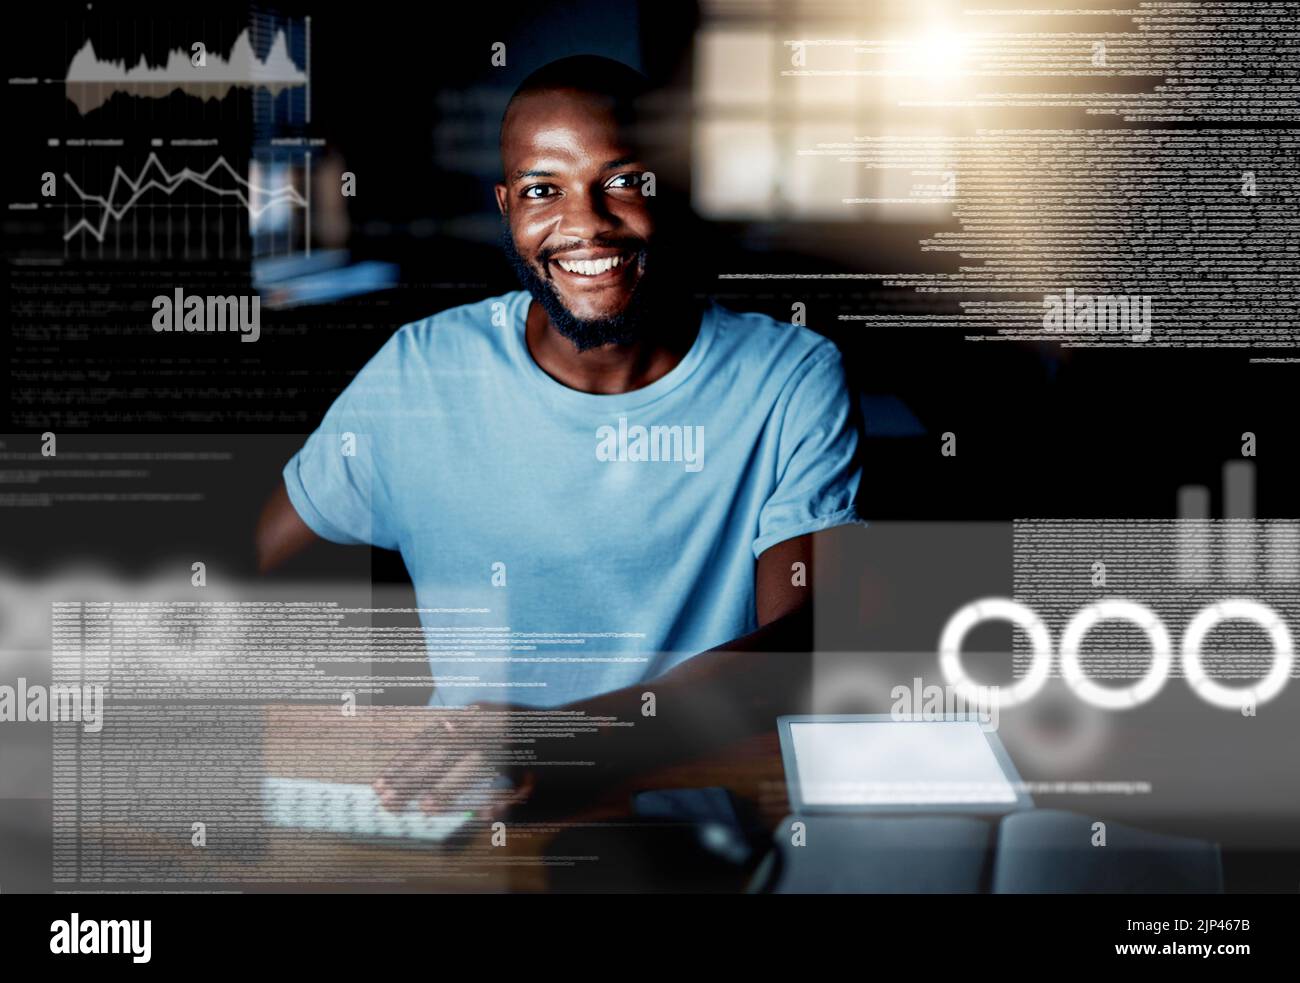 Computerprogrammierung, Codierung und Webdesign mit einem kreativen Profi in seinem Büro mit CGI, Spezialeffekten und digitalem Overlay. Porträt eines Stockfoto